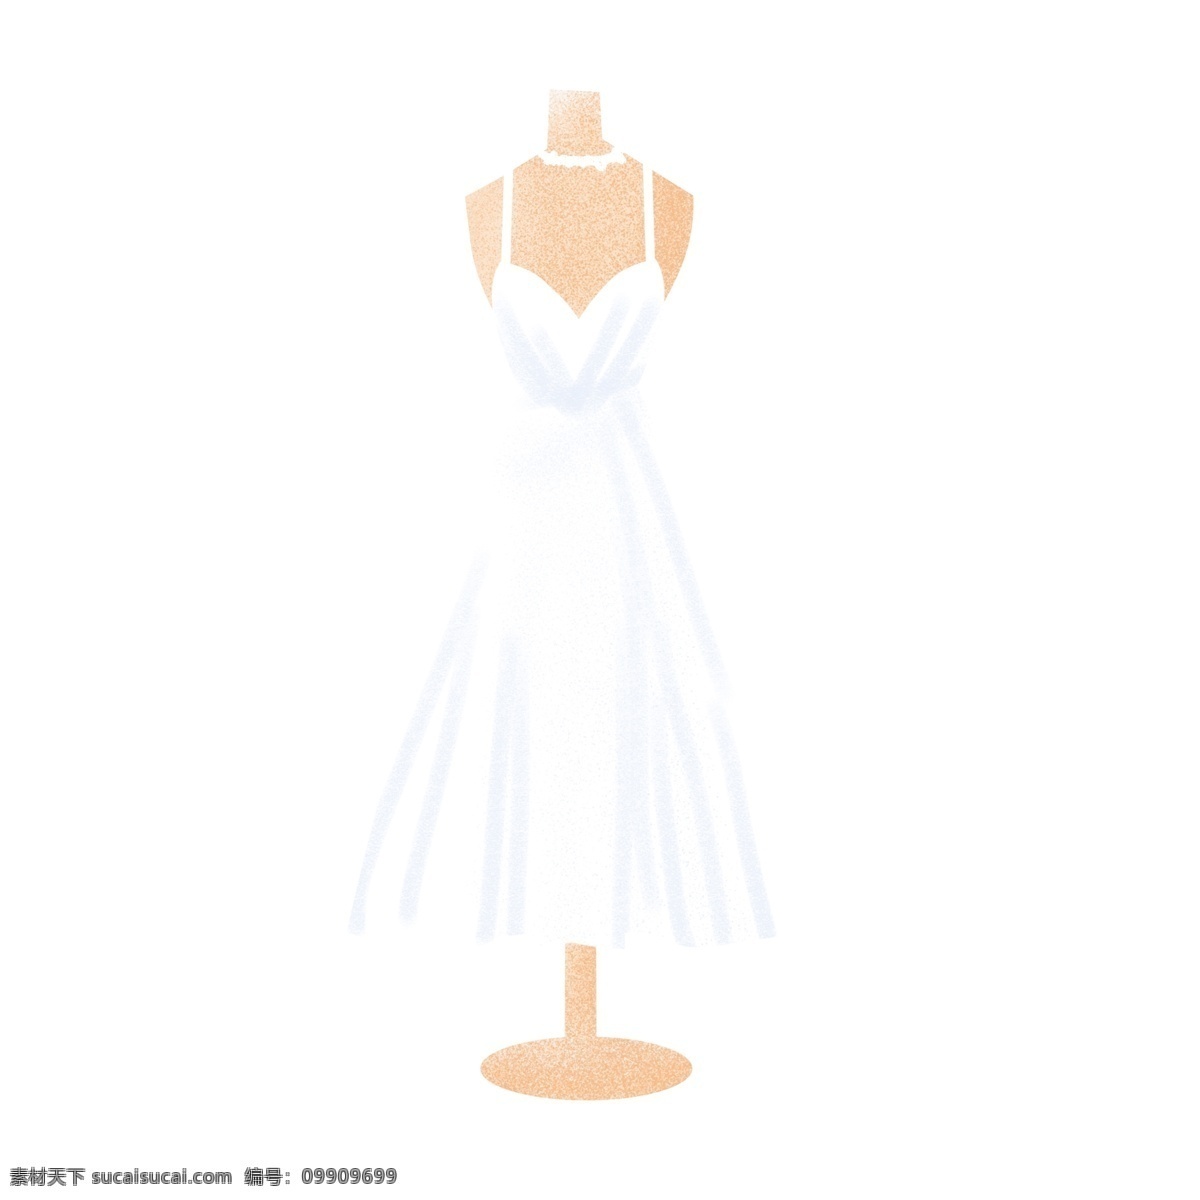 手绘 模特 架上 白色 吊带 礼服 简约 清新 卡通 服装设计 模特架 白色礼服 婚礼礼服